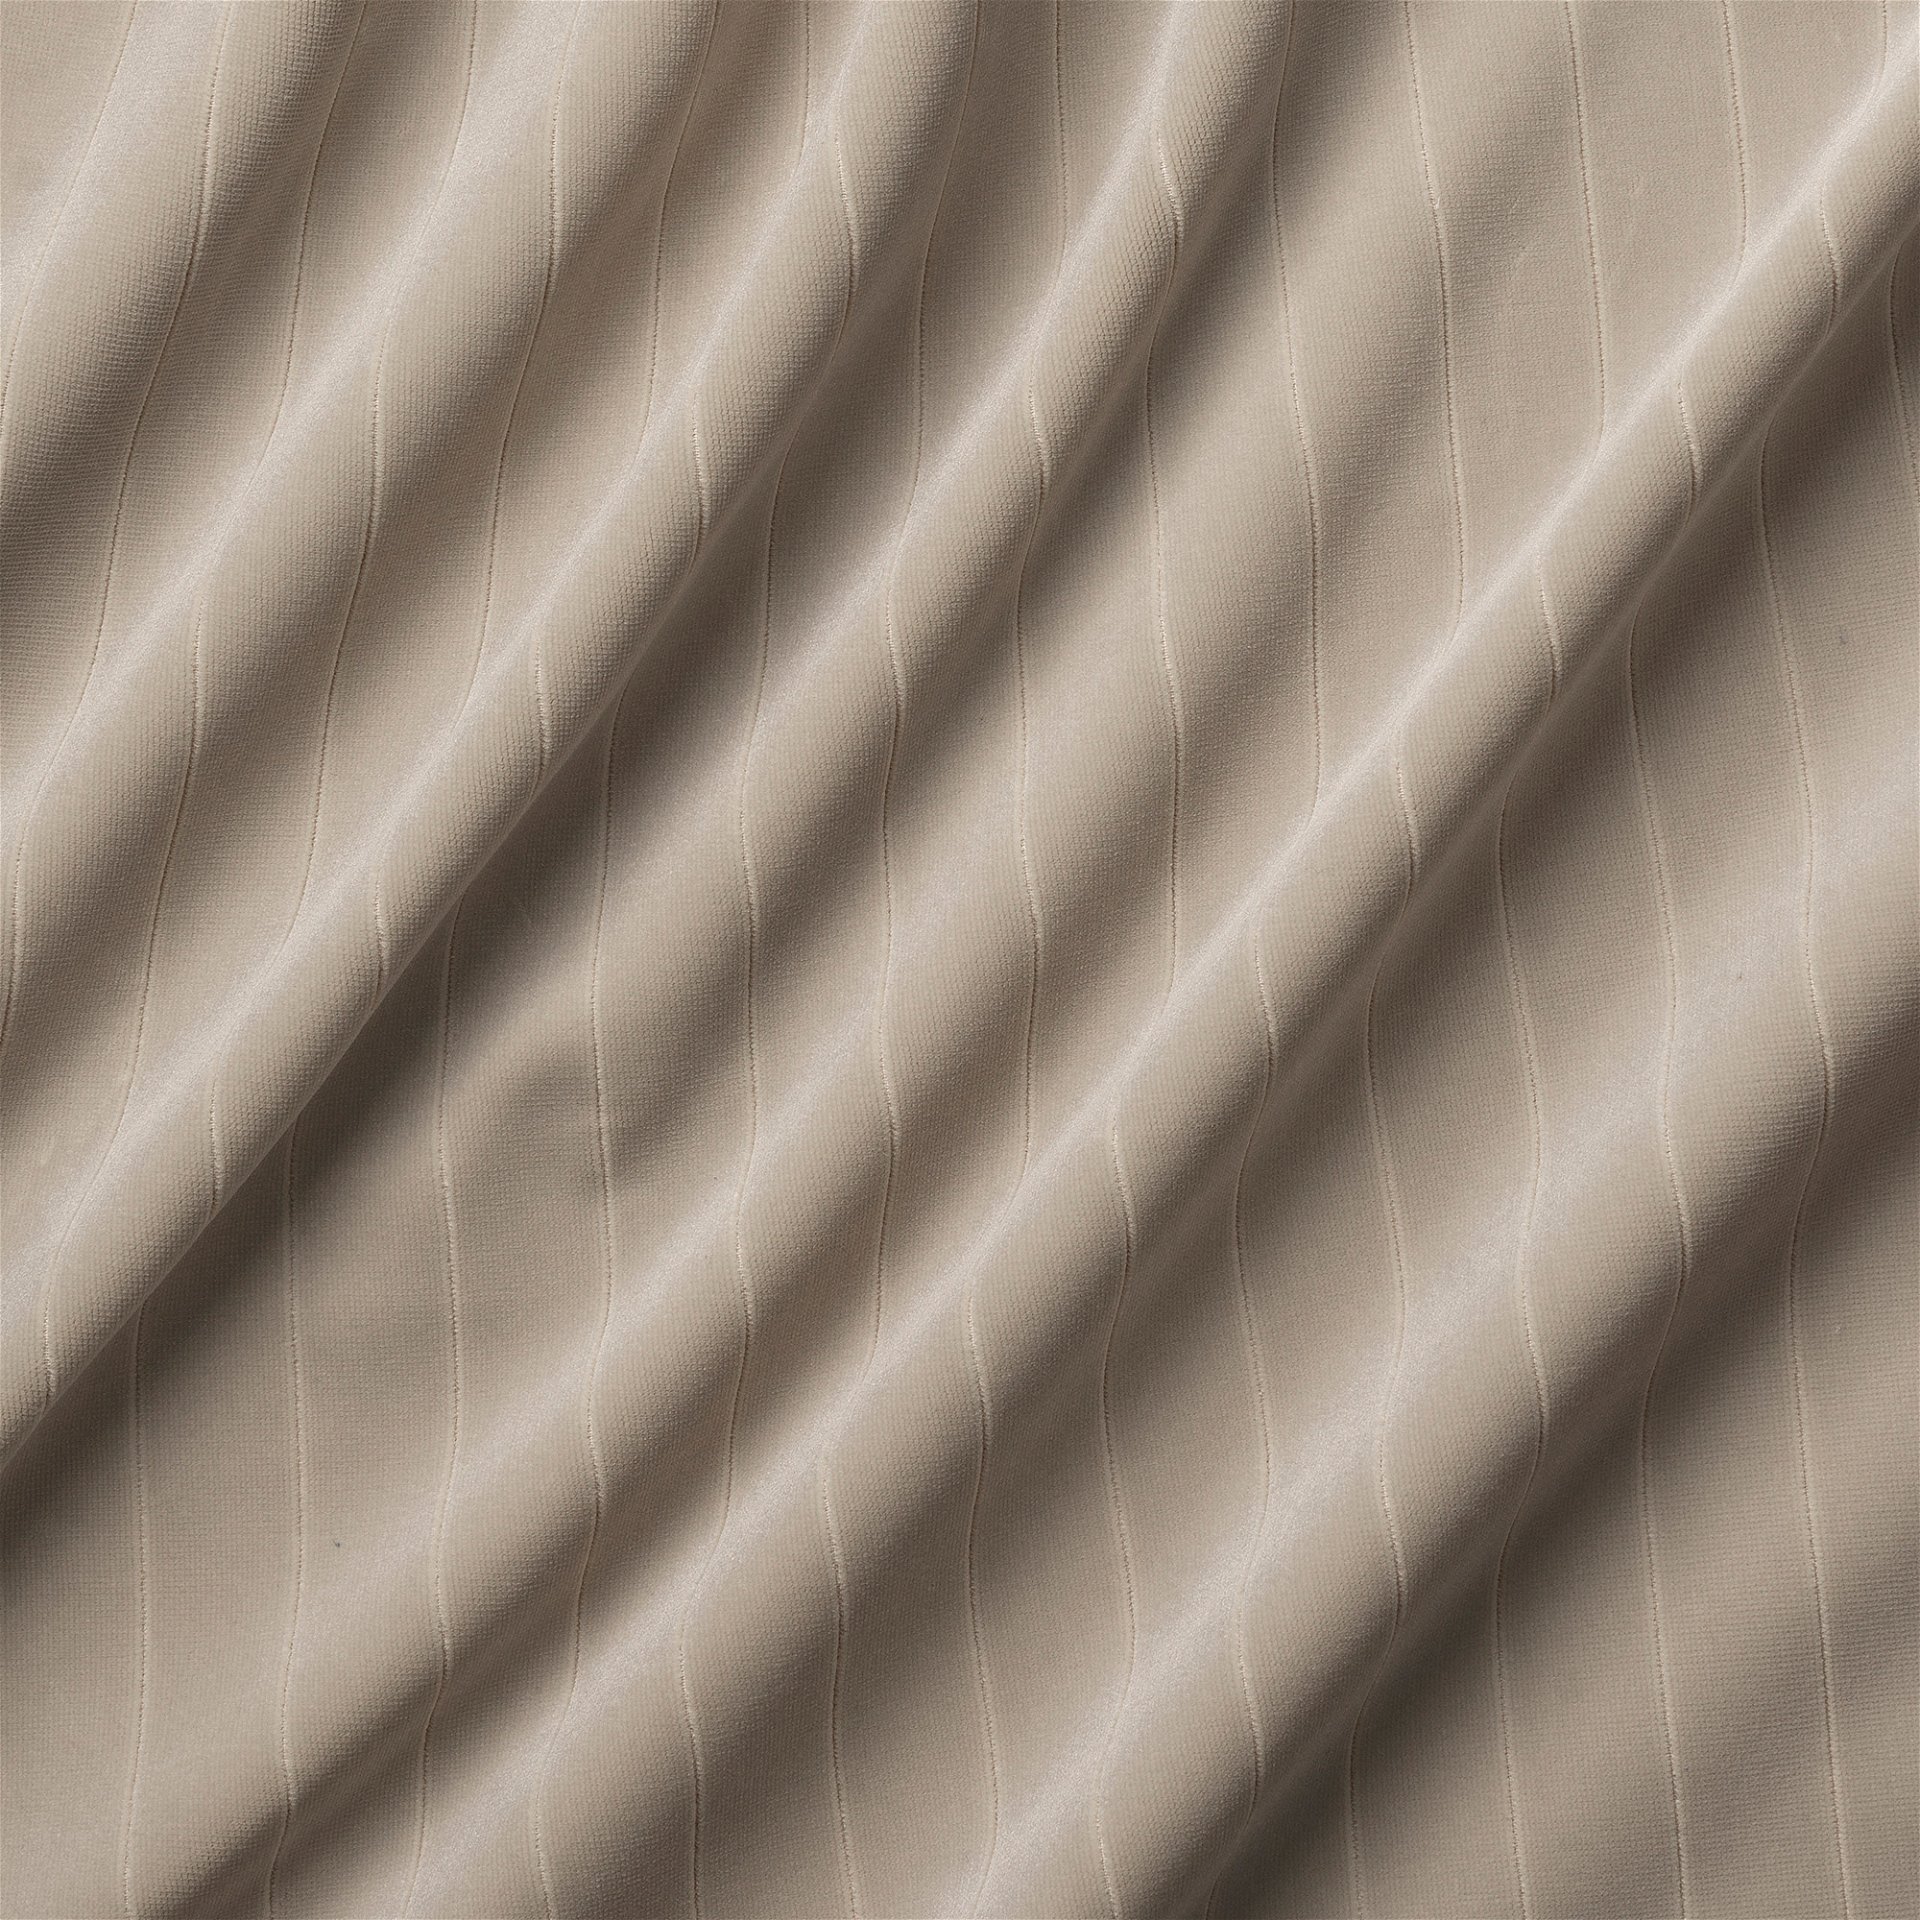 Striped Velvet